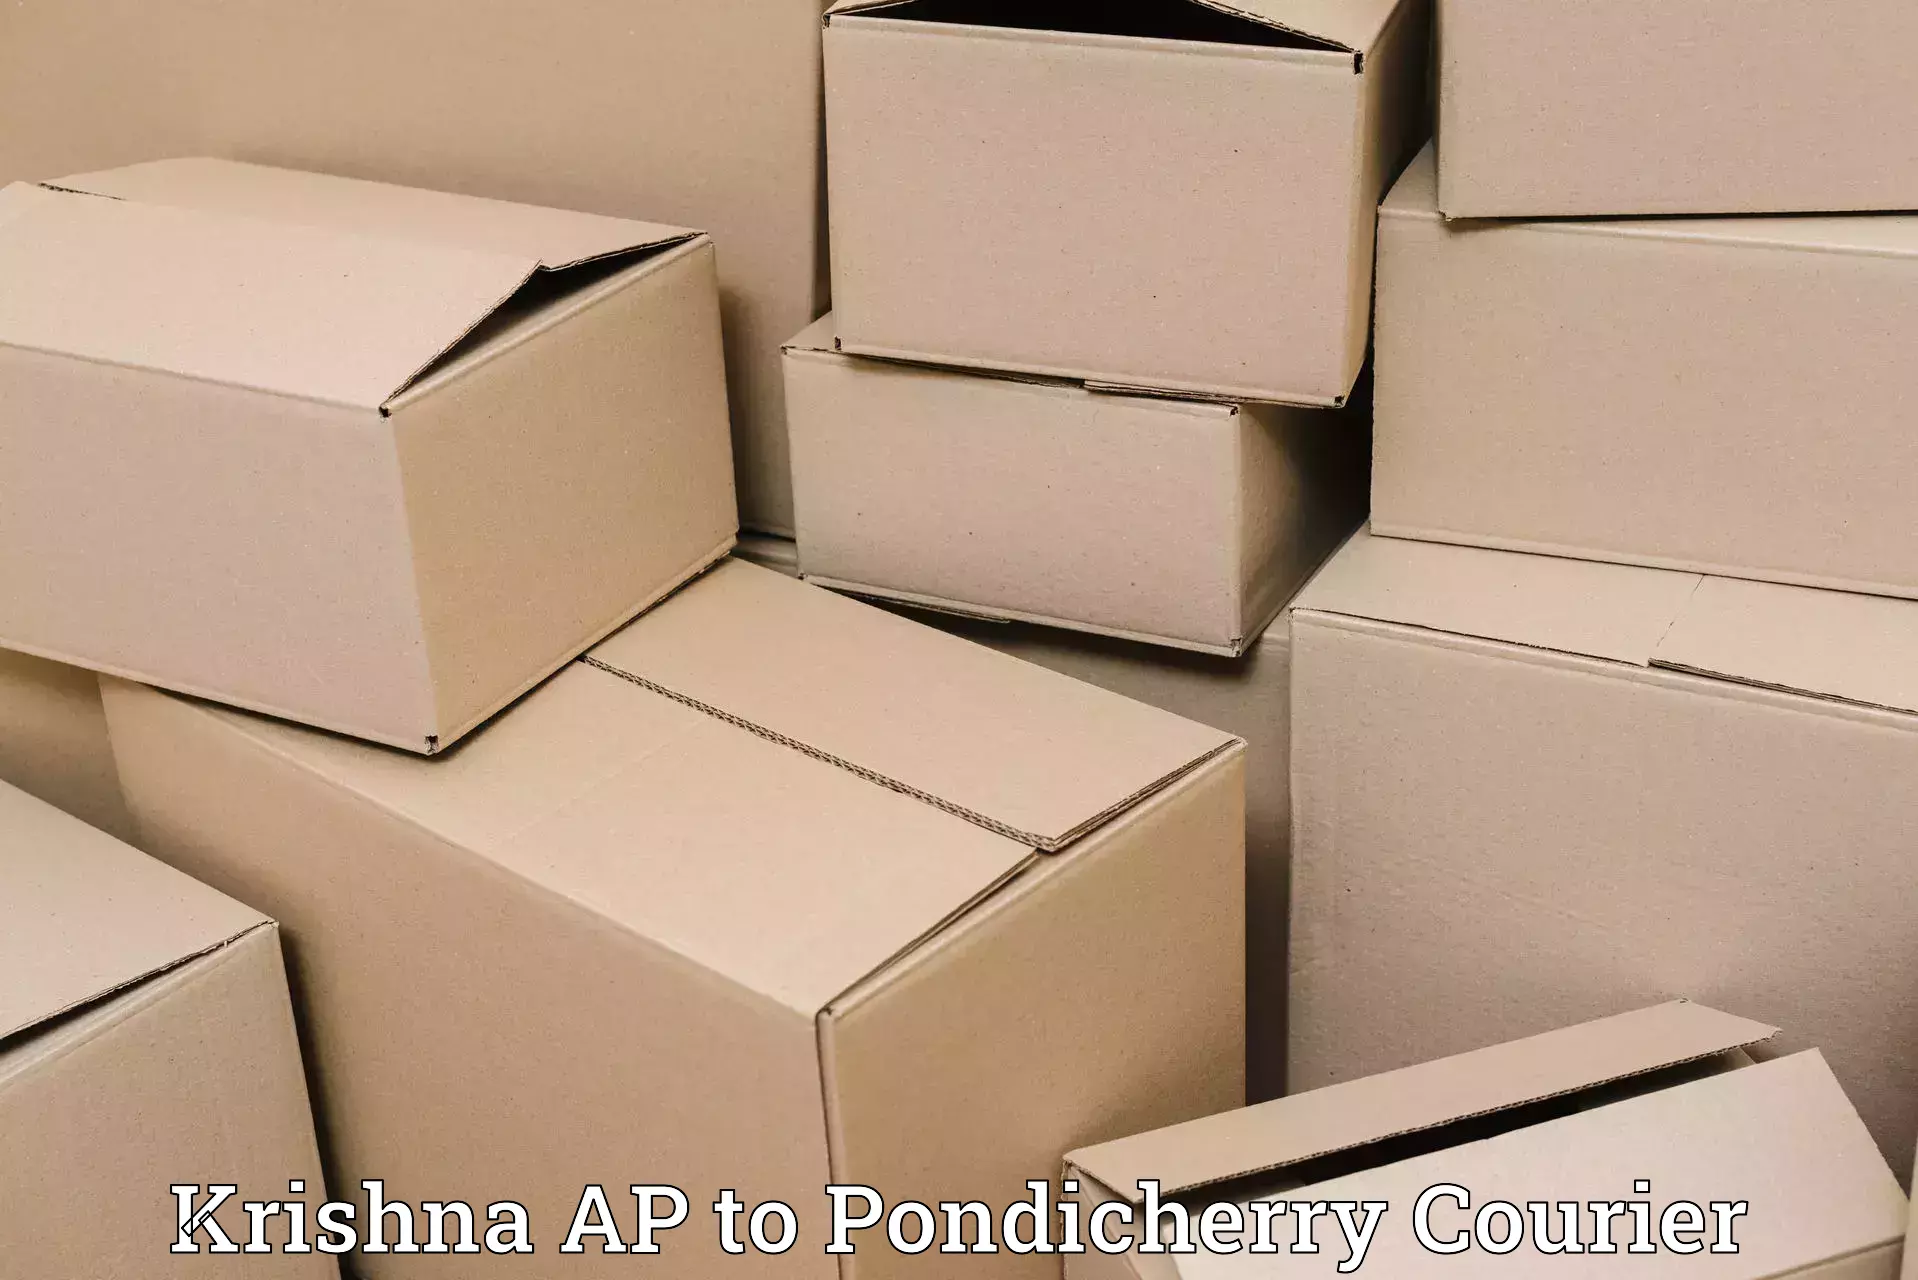 Weekend courier service Krishna AP to Pondicherry